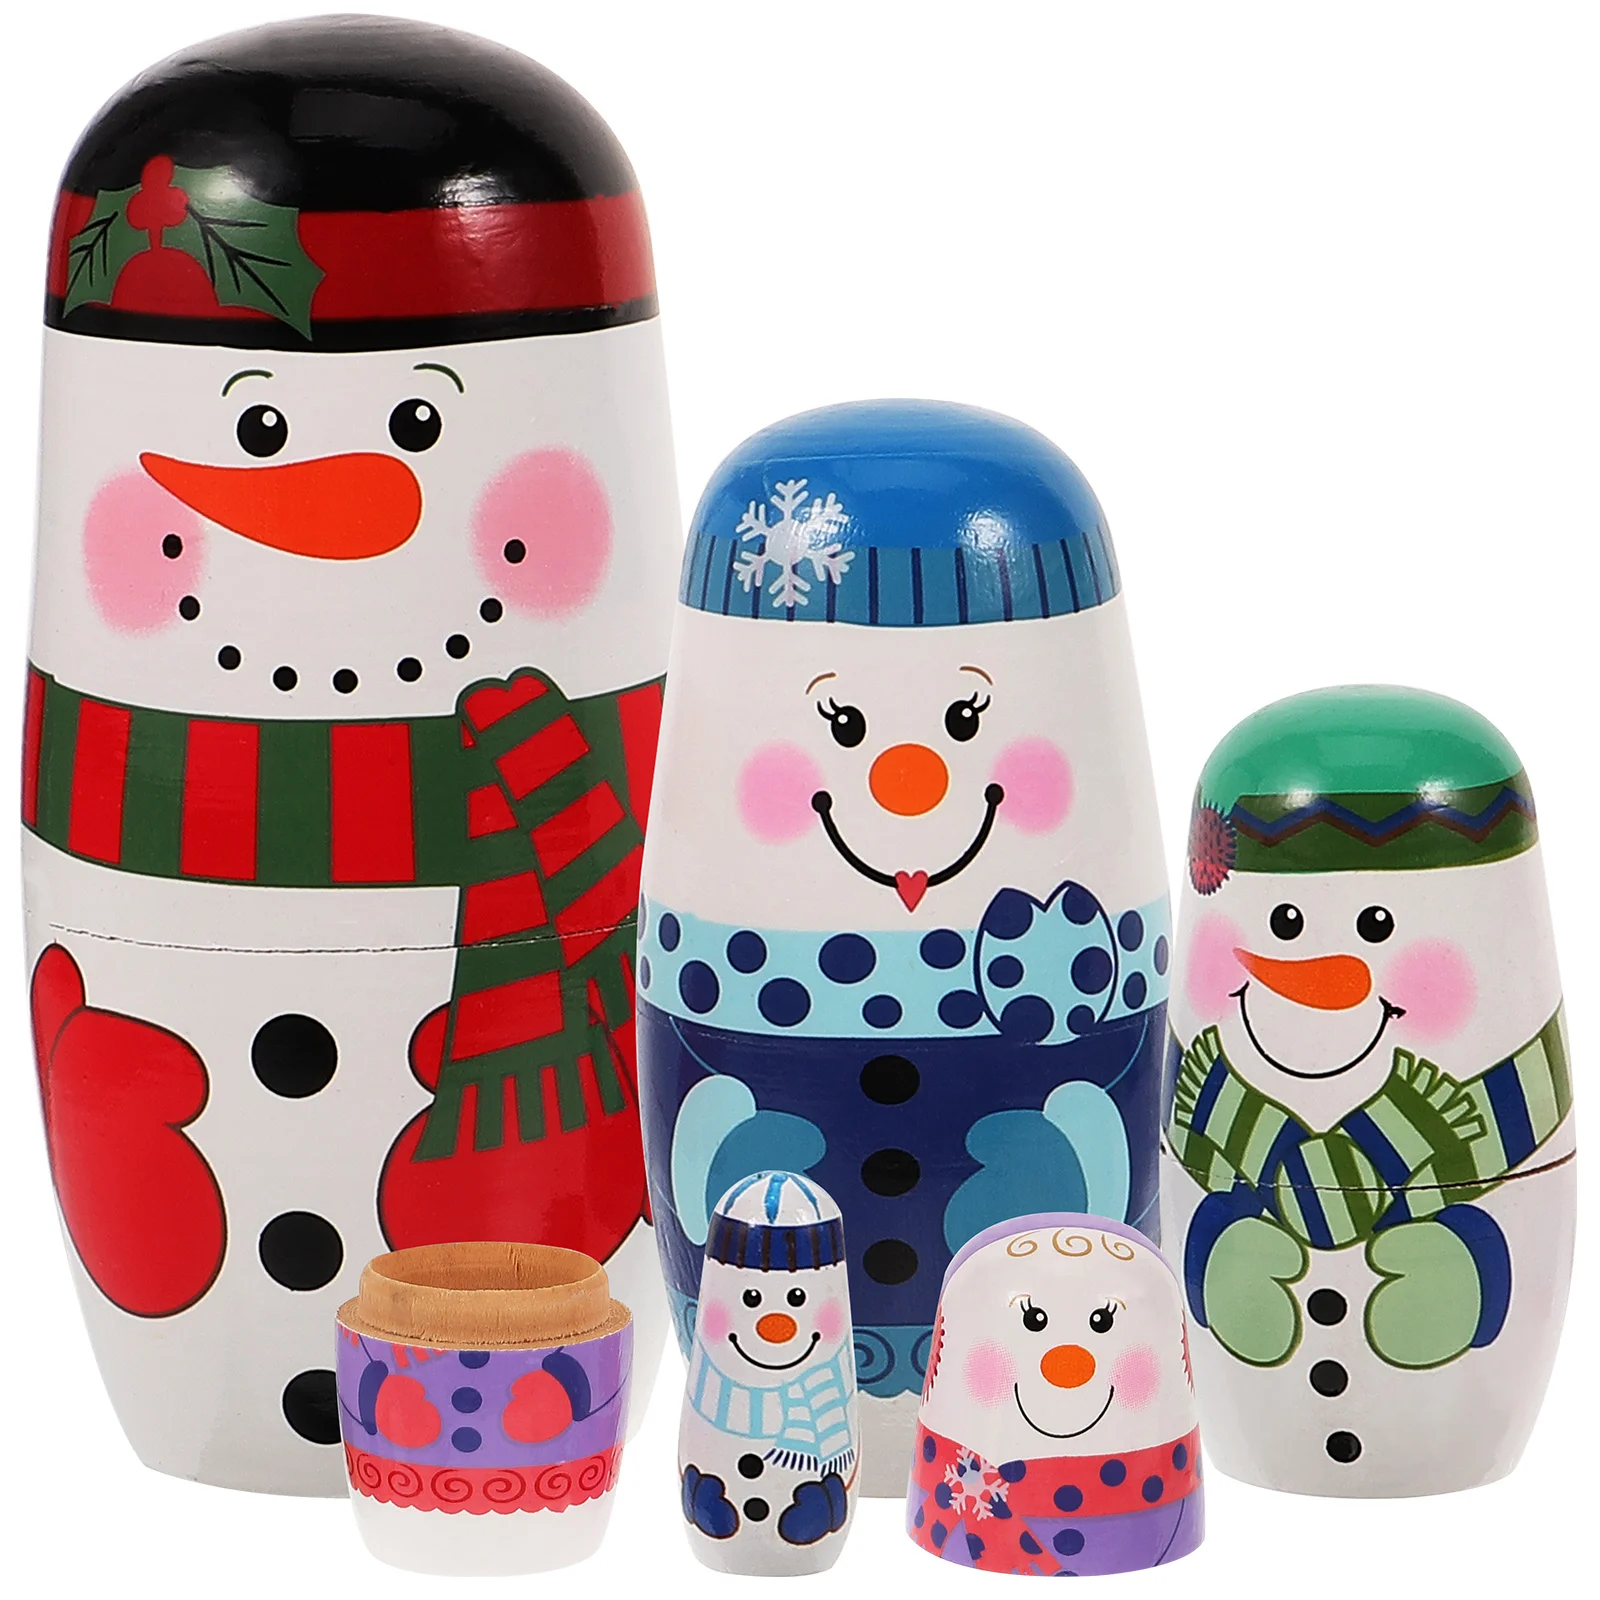 

Рождественские деревянные русские куклы ручной работы, Матрешка, деревянный набор для укладки, фигурки снеговика, мультяшный узор, гнездо